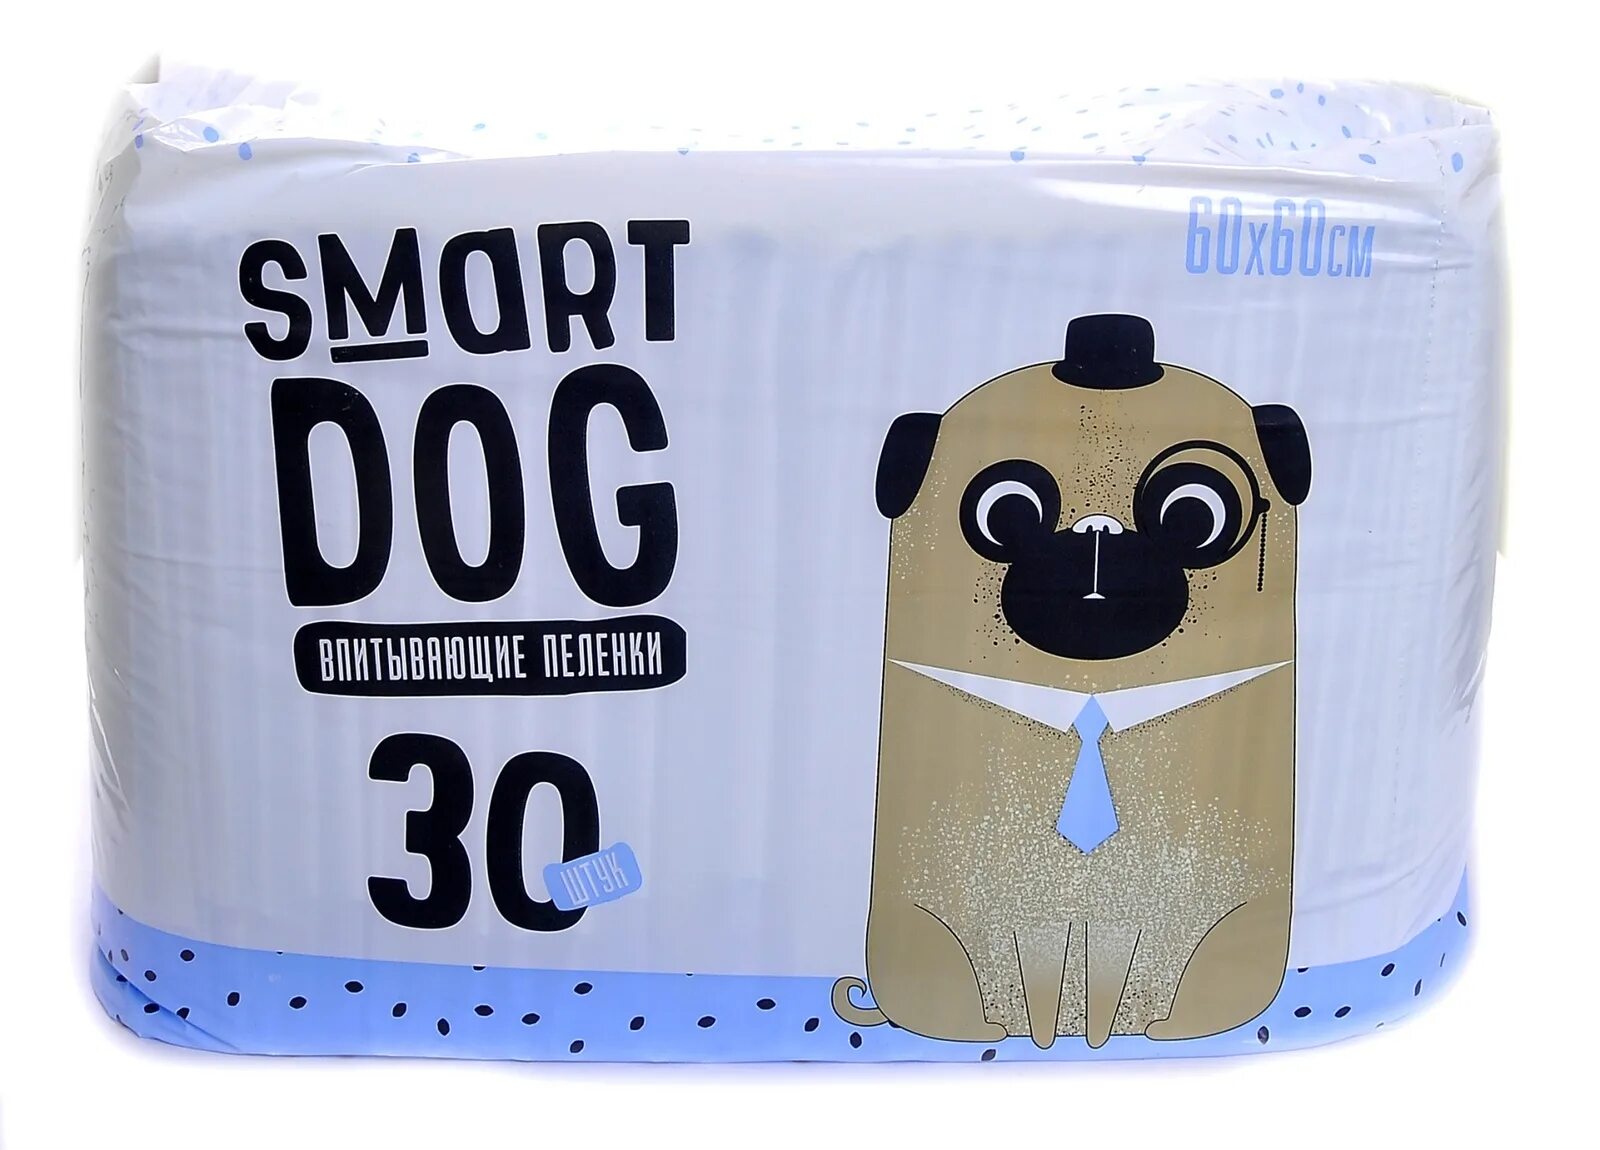 Smart Dog впитывающие пеленки для собак 60*40, 10 шт. Пеленки впитывающие для собак Smart Dog 60 х 60 см. Smart Dog пелёнки впитывающие пеленки для собак 60х40, 10 шт. Пеленки Smart Dog 60 х 40 см, 30. Купить пеленки для собак дешево